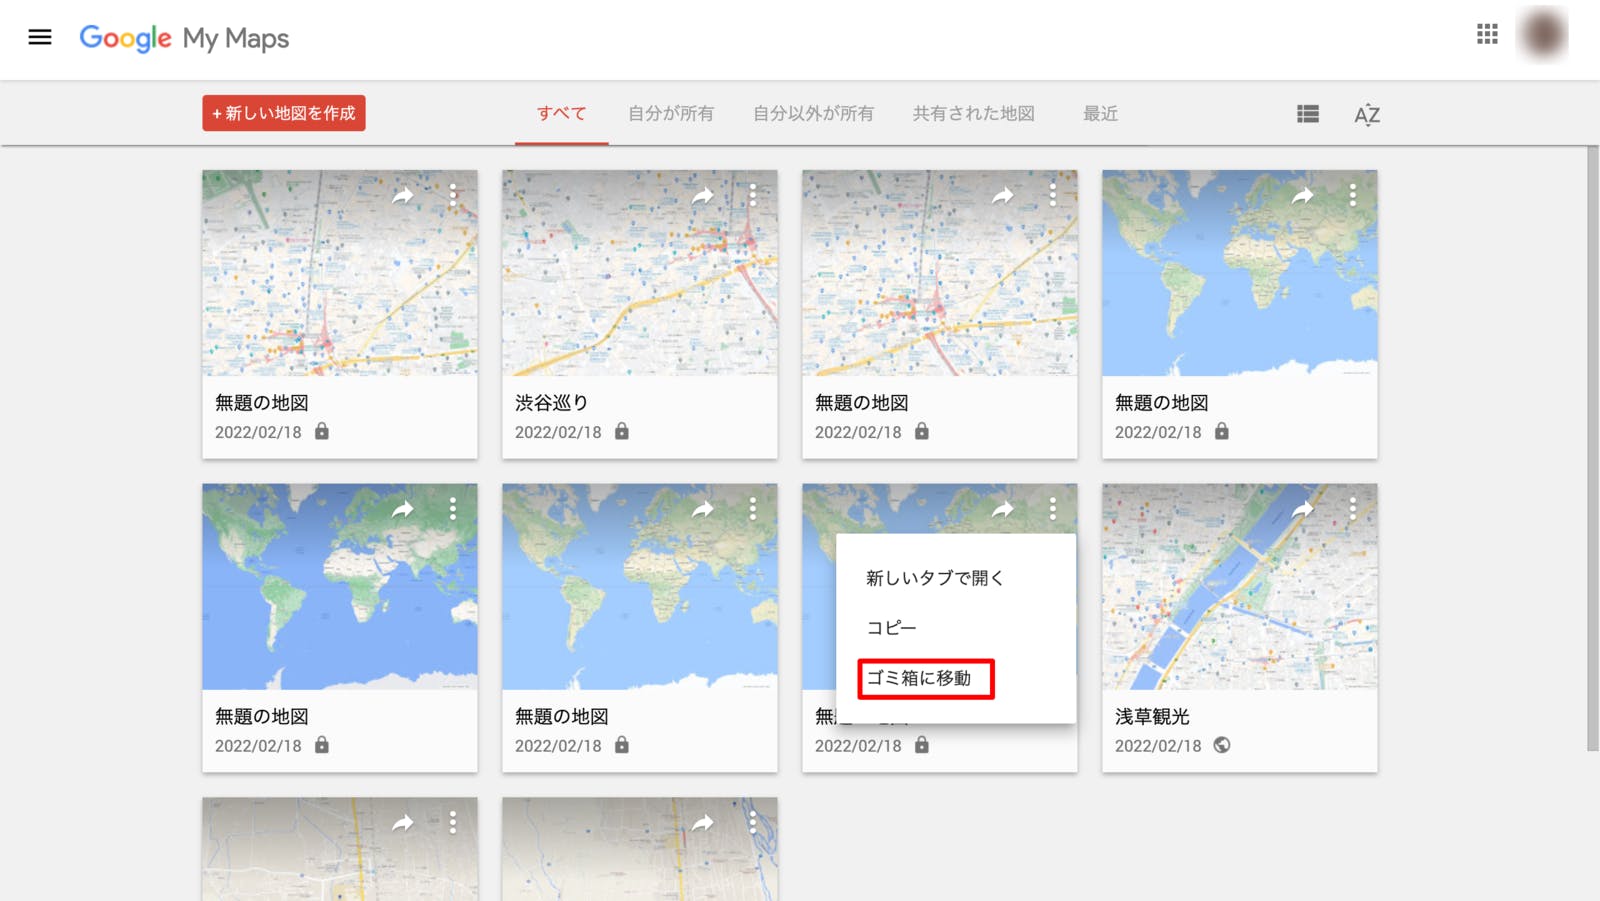 「Googleマイマップ」で閲覧した地図の一覧